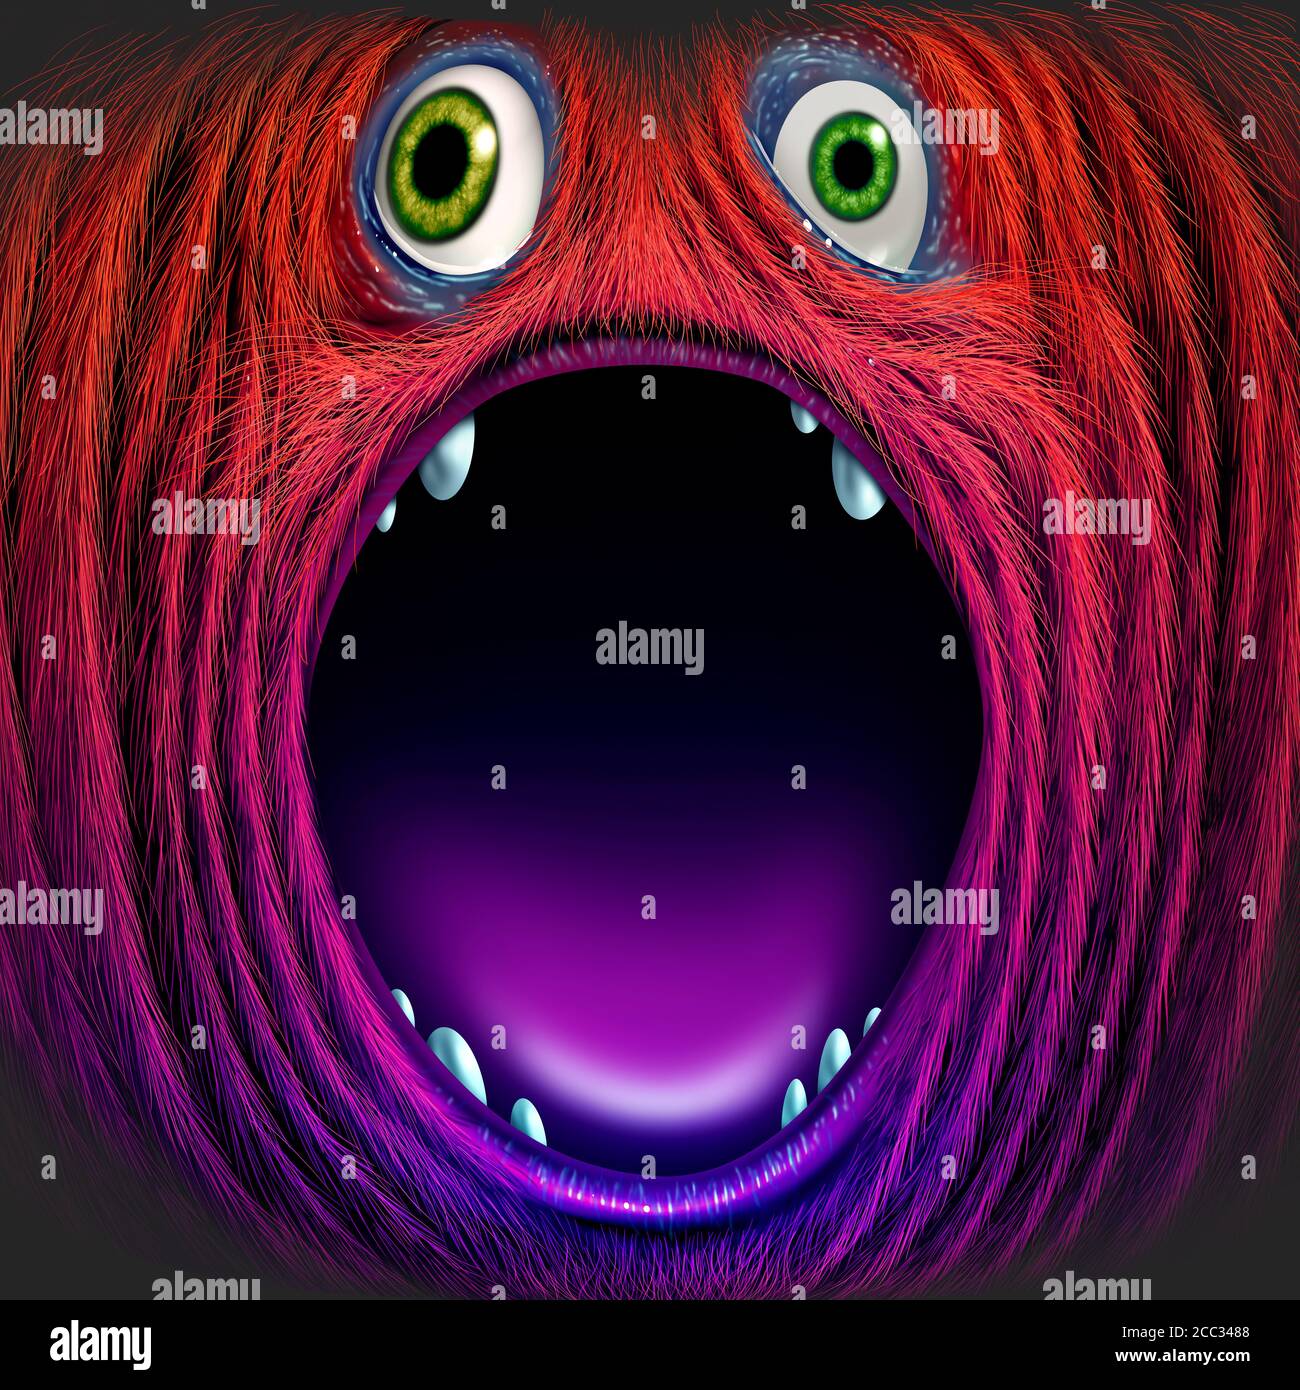 Monstruo rojo o tonto avatar sasquatch con una gran boca abierta como una criatura salvaje furiosa como un símbolo de halloween con elementos de ilustración 3D. Foto de stock